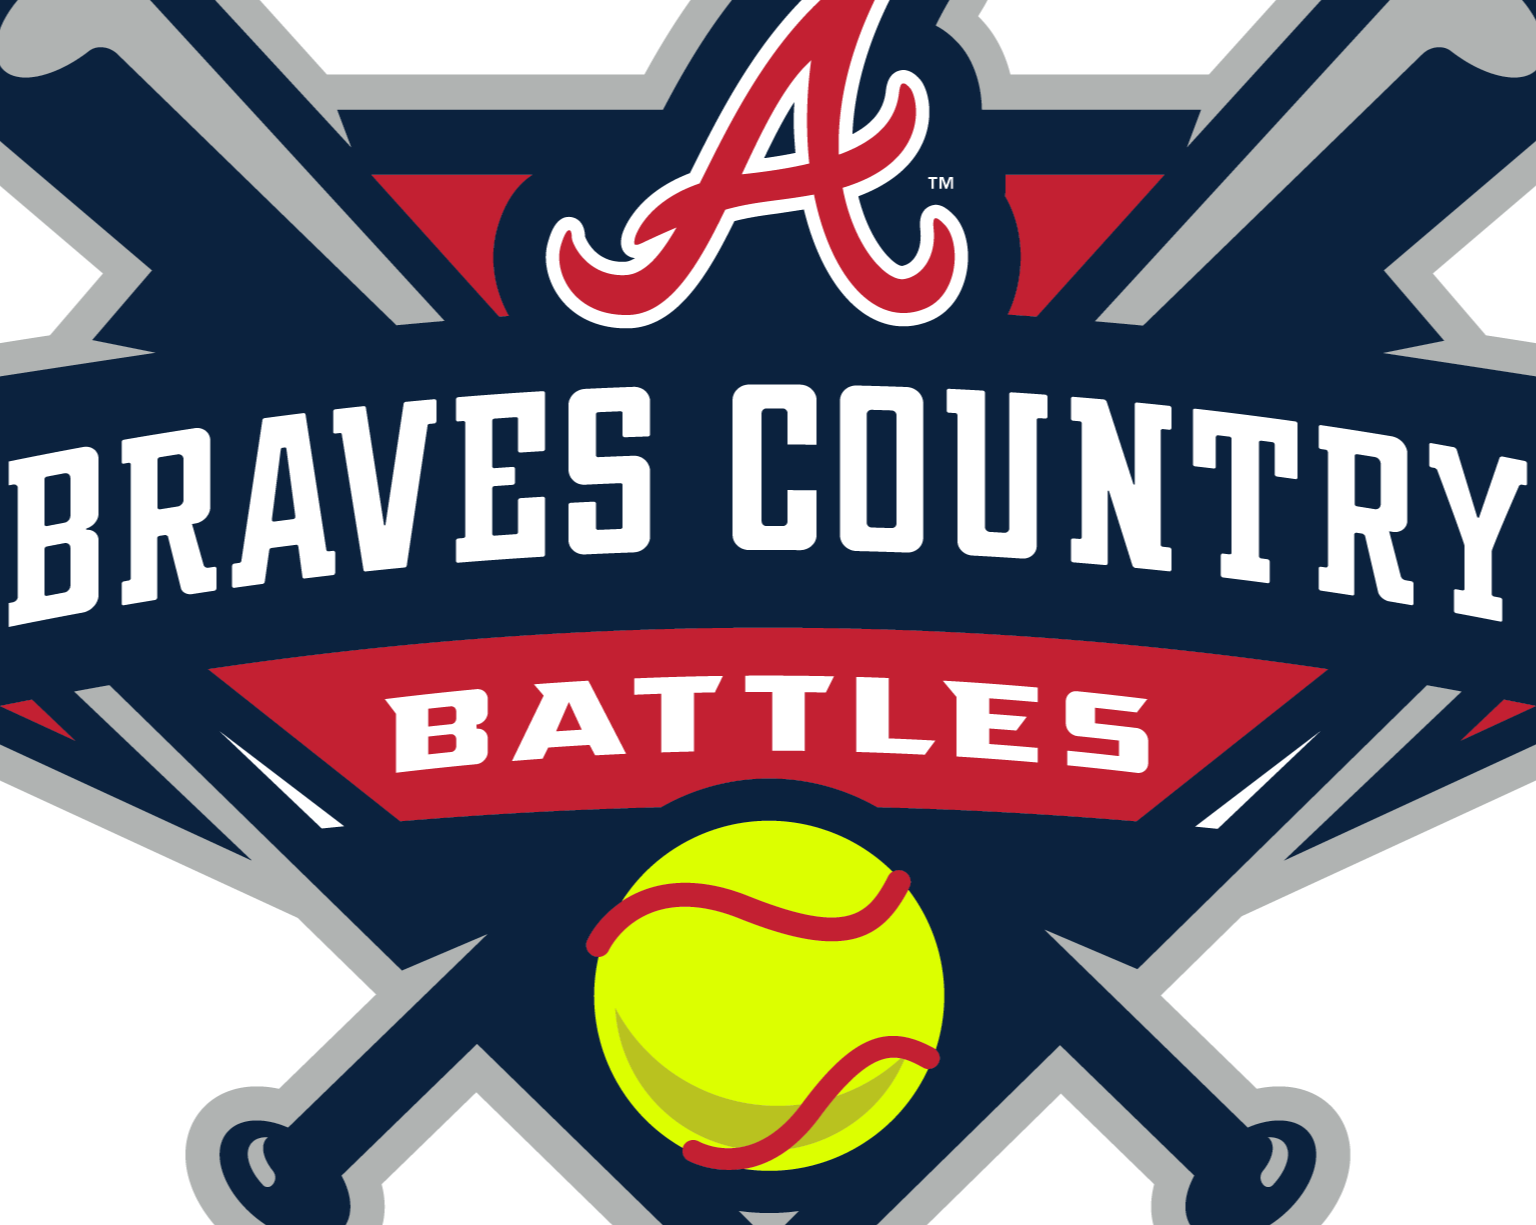 Braves Country Battles Softball 06/03/2022 06/05/2022 17 Baseball